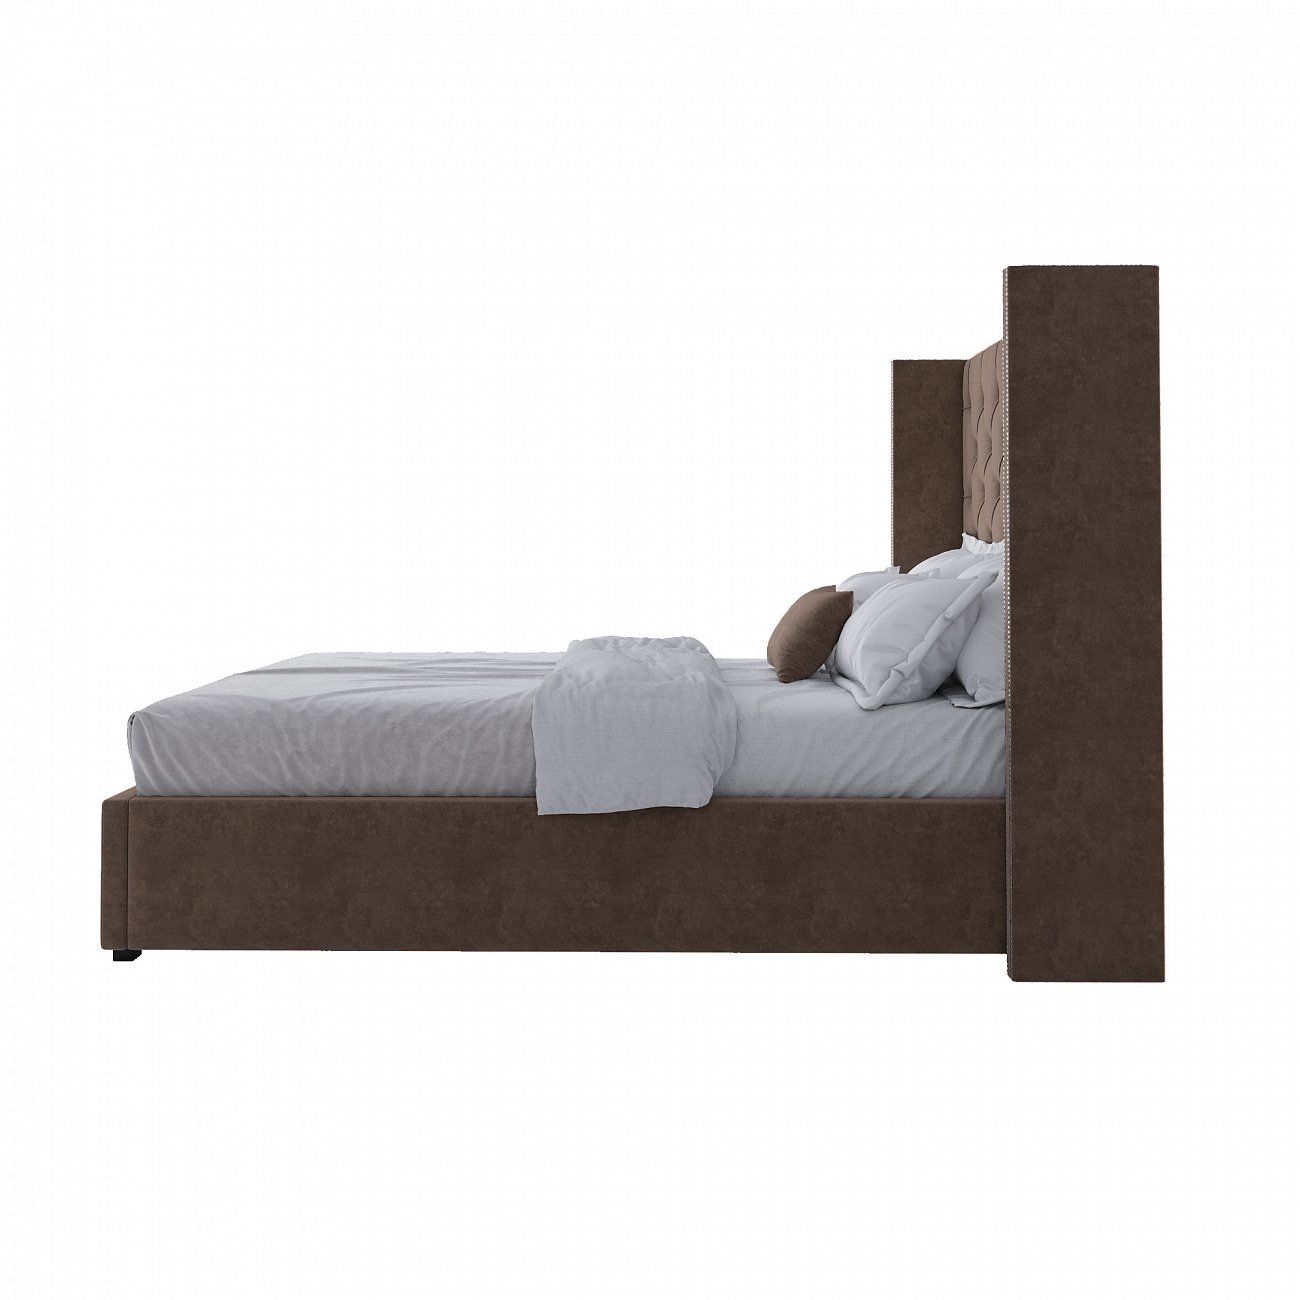 Кровать подростковая 140х200 см коричневая с гвоздиками Wing